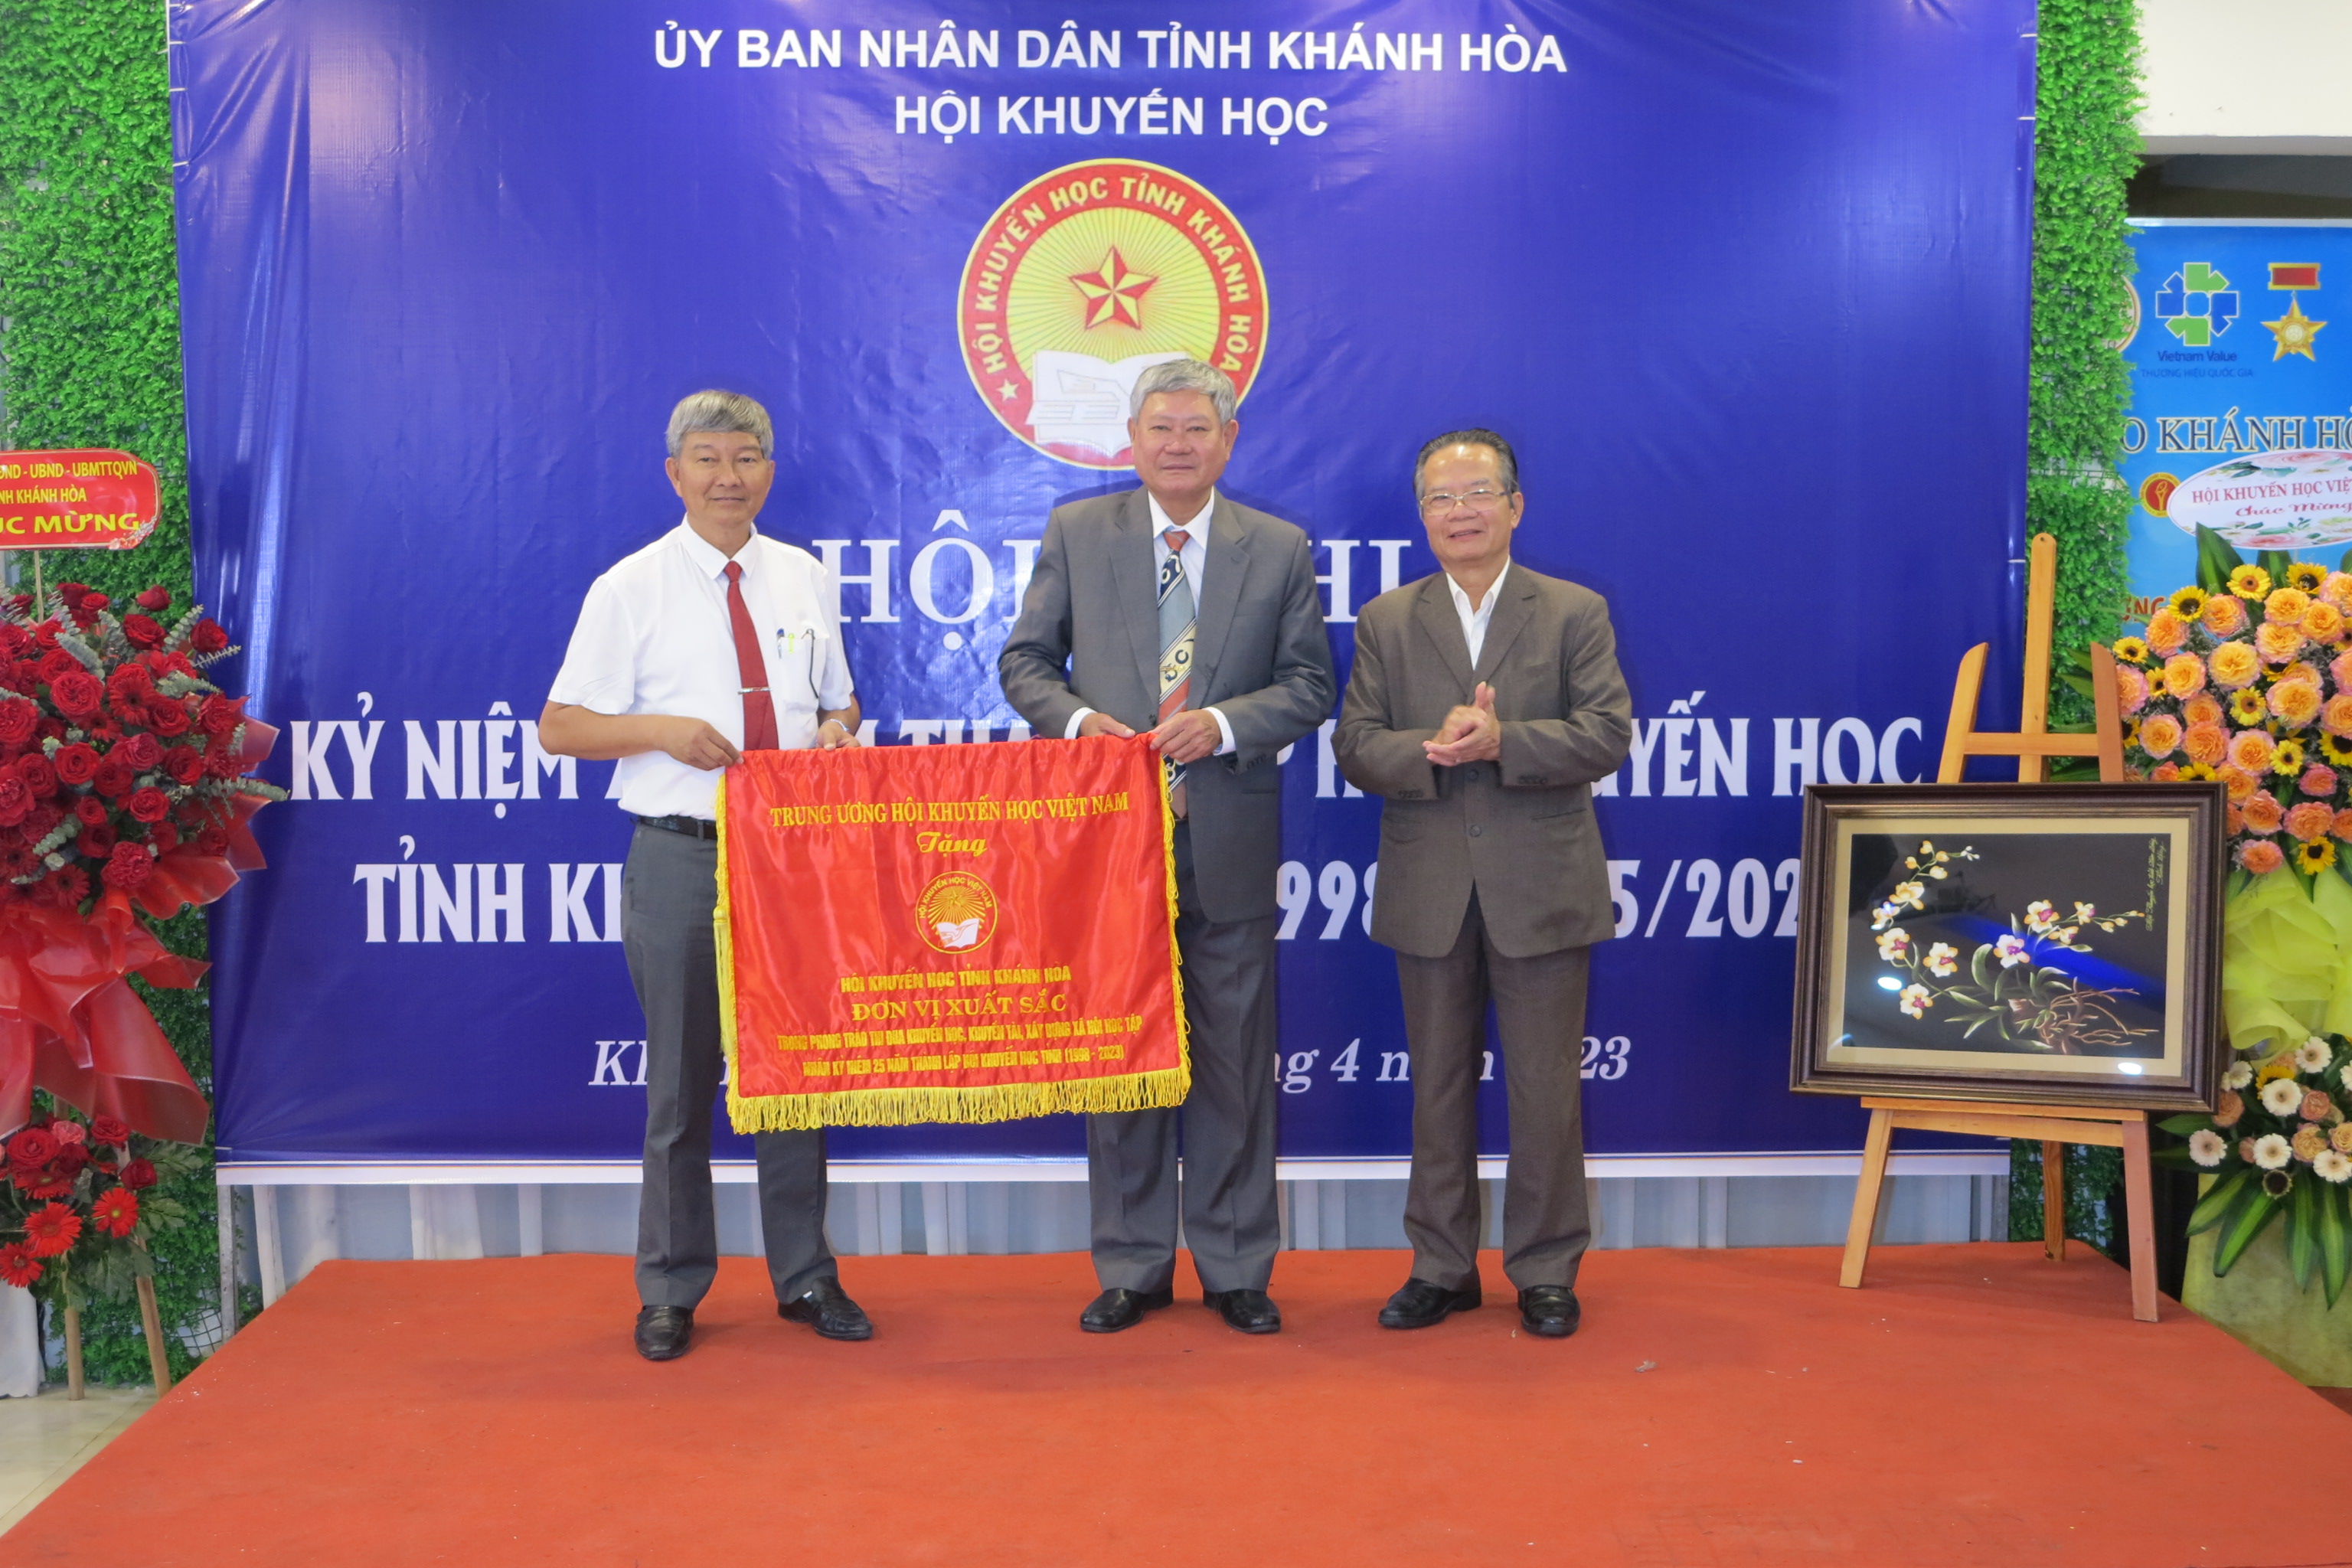 Hội Khuyến học tỉnh Khánh Hòa: Kỷ niệm 25 năm ngày thành lập